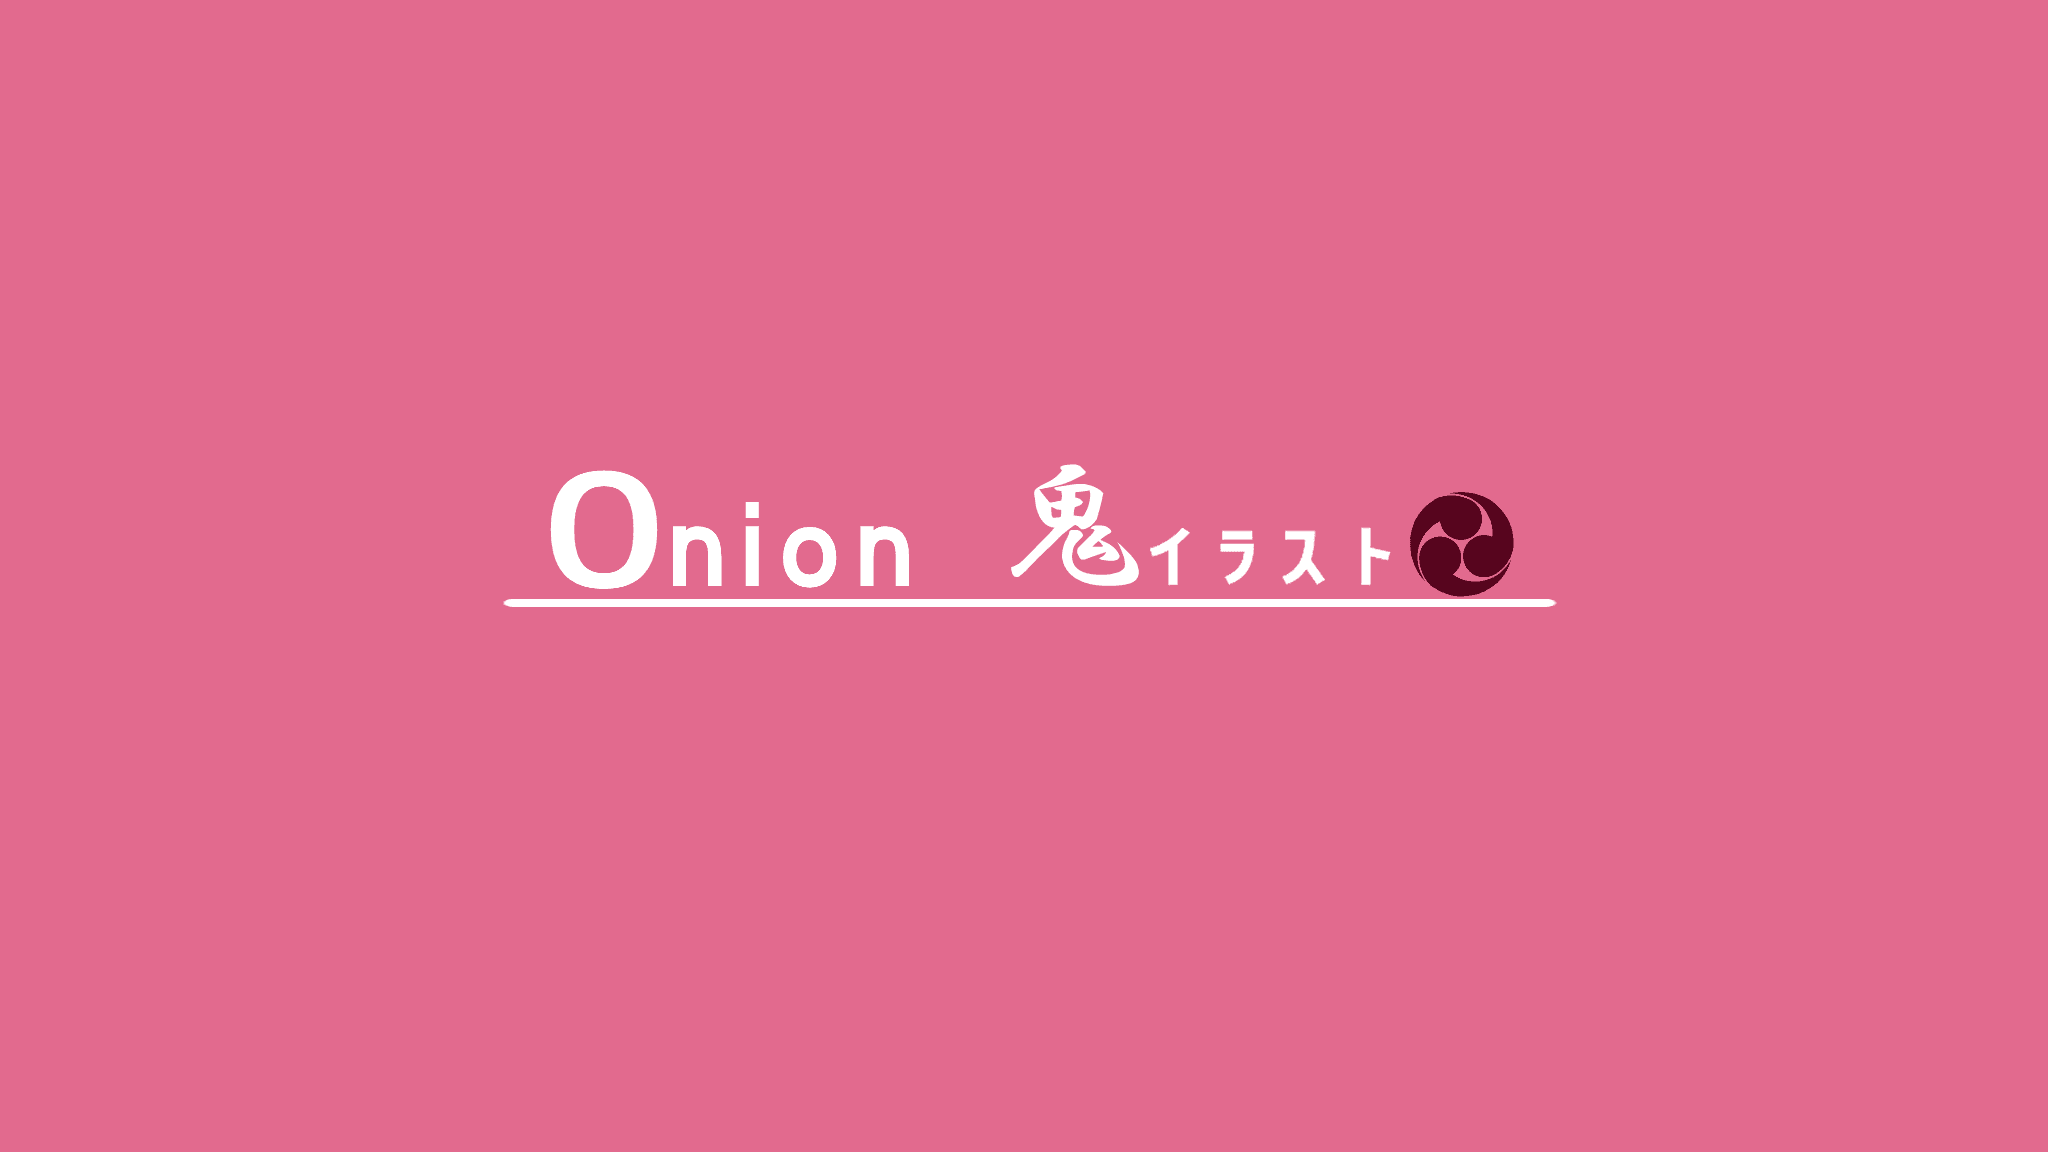 Onion_oni 横幅